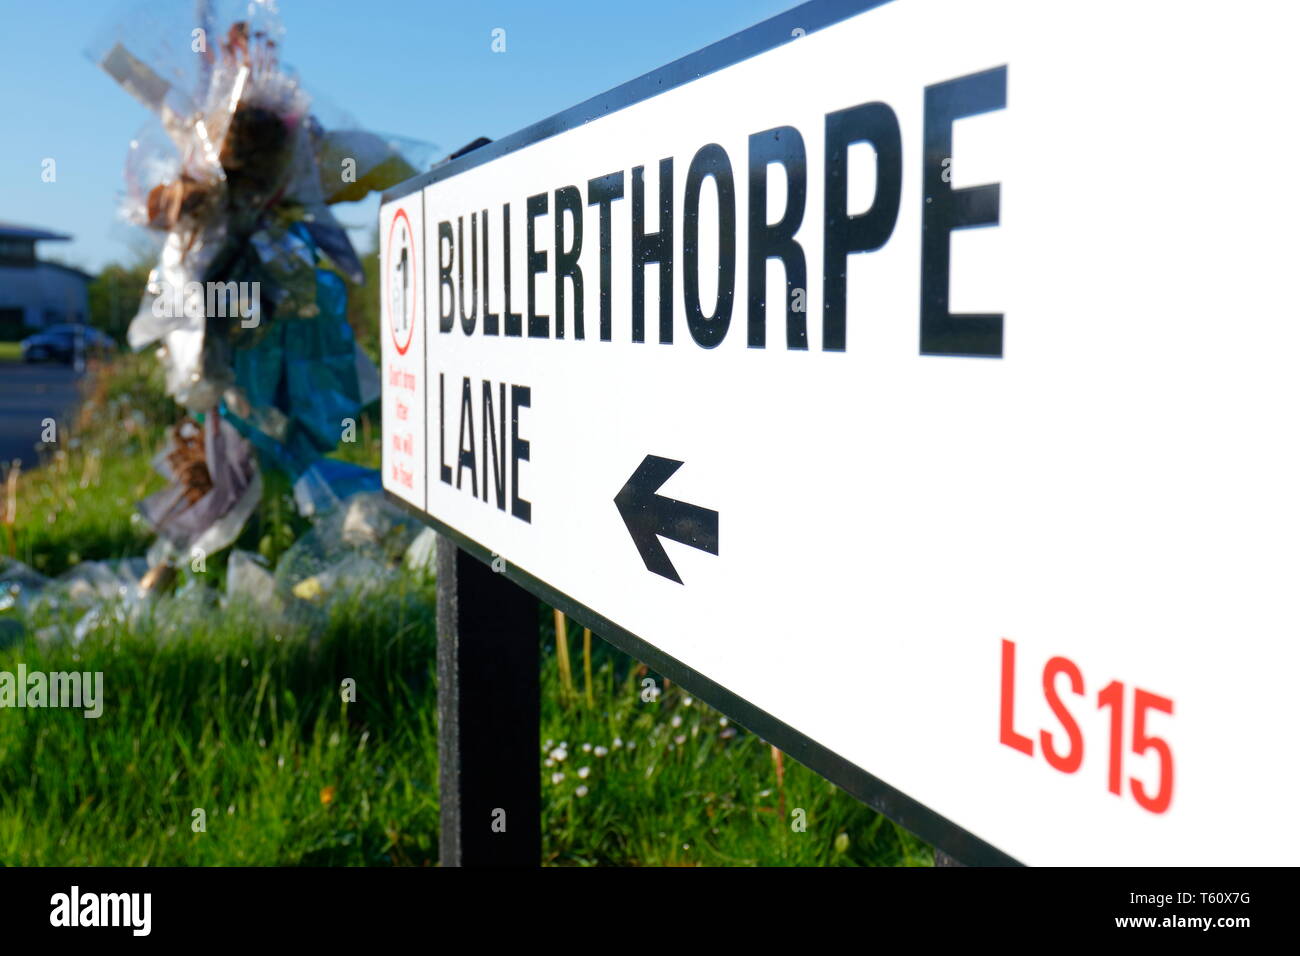 Bullerthorpe Lane zwischen Colton & Swillington in Leeds, ist eine notorische Straße, der für seine hohe Unfallrate bekannt ist, mit vielen Todesopfern. Stockfoto